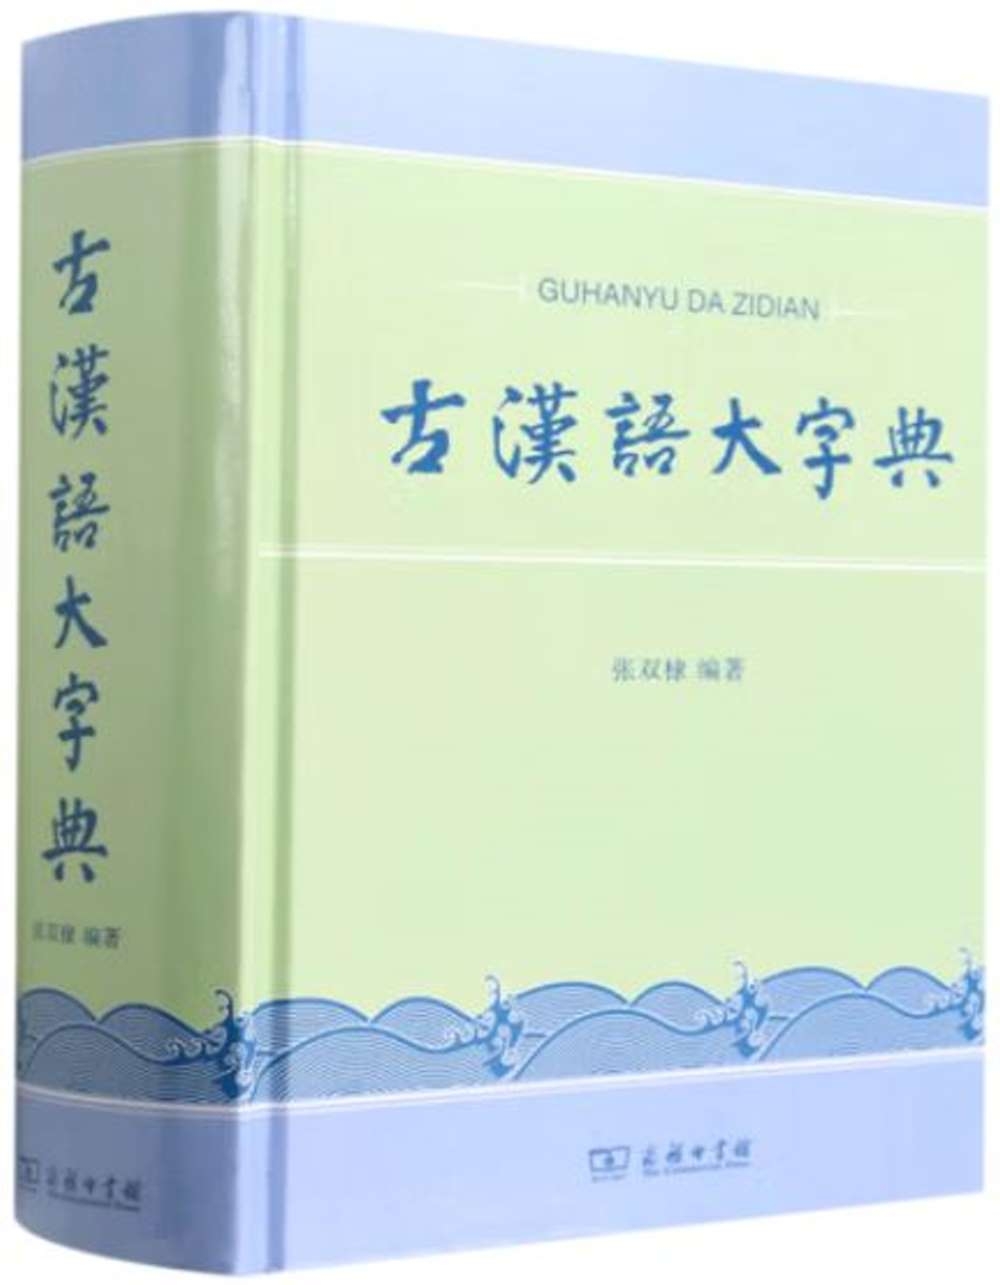 古漢語大字典